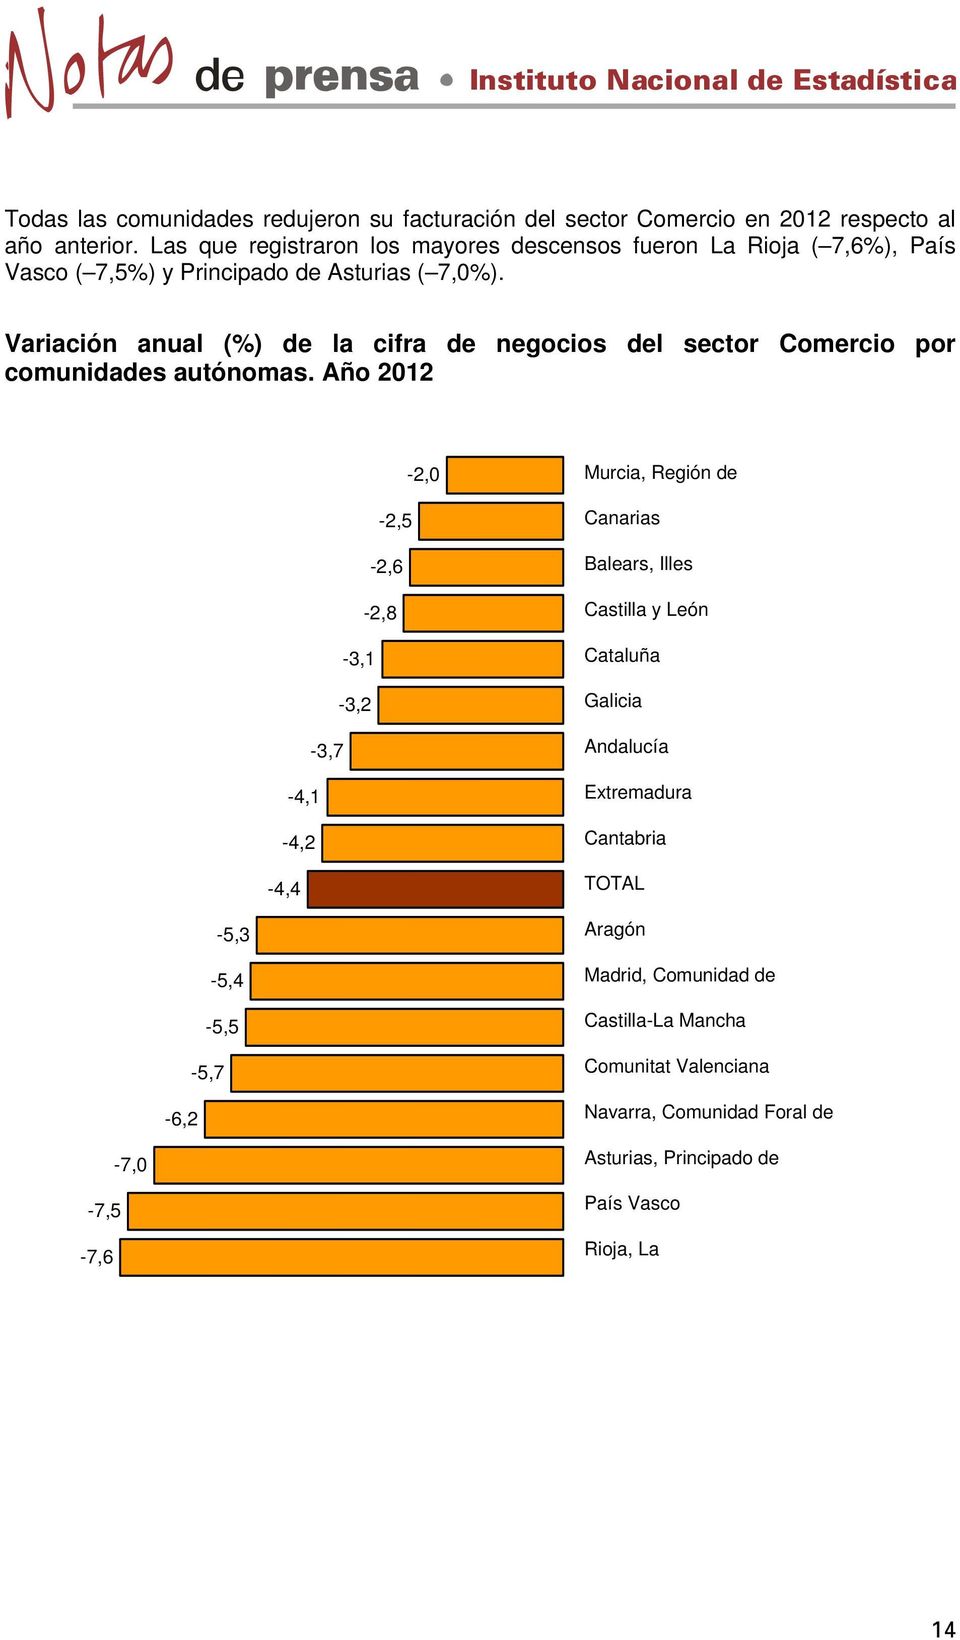 Variación anual (%) de la cifra de negocios del sector Comercio por comunidades autónomas.